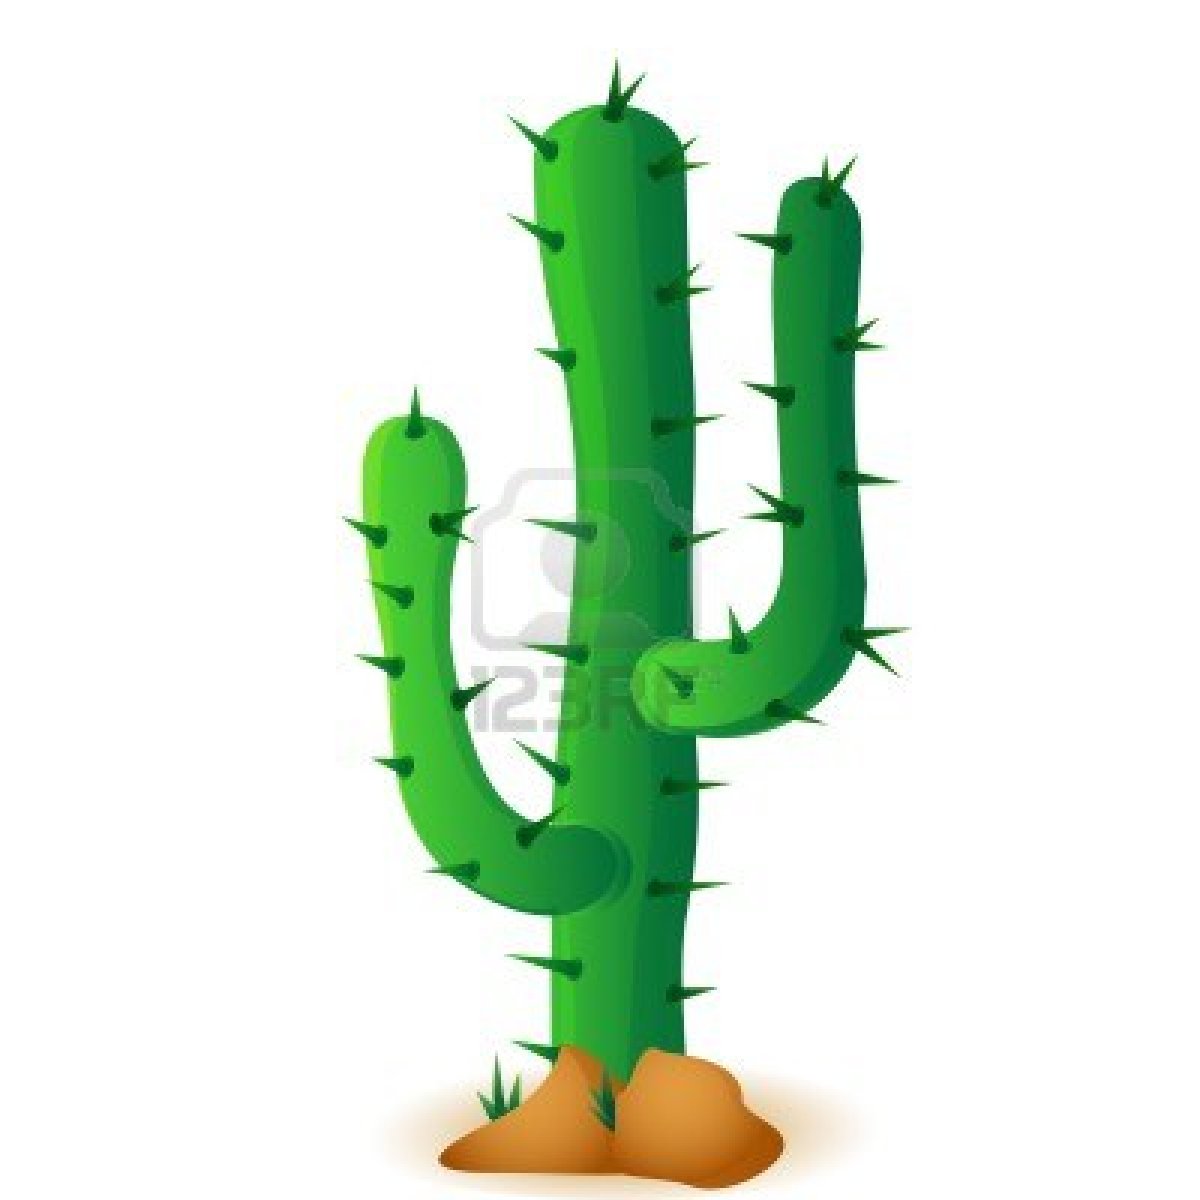 13907057-kaktus-isoliert-auf-weissem-hin